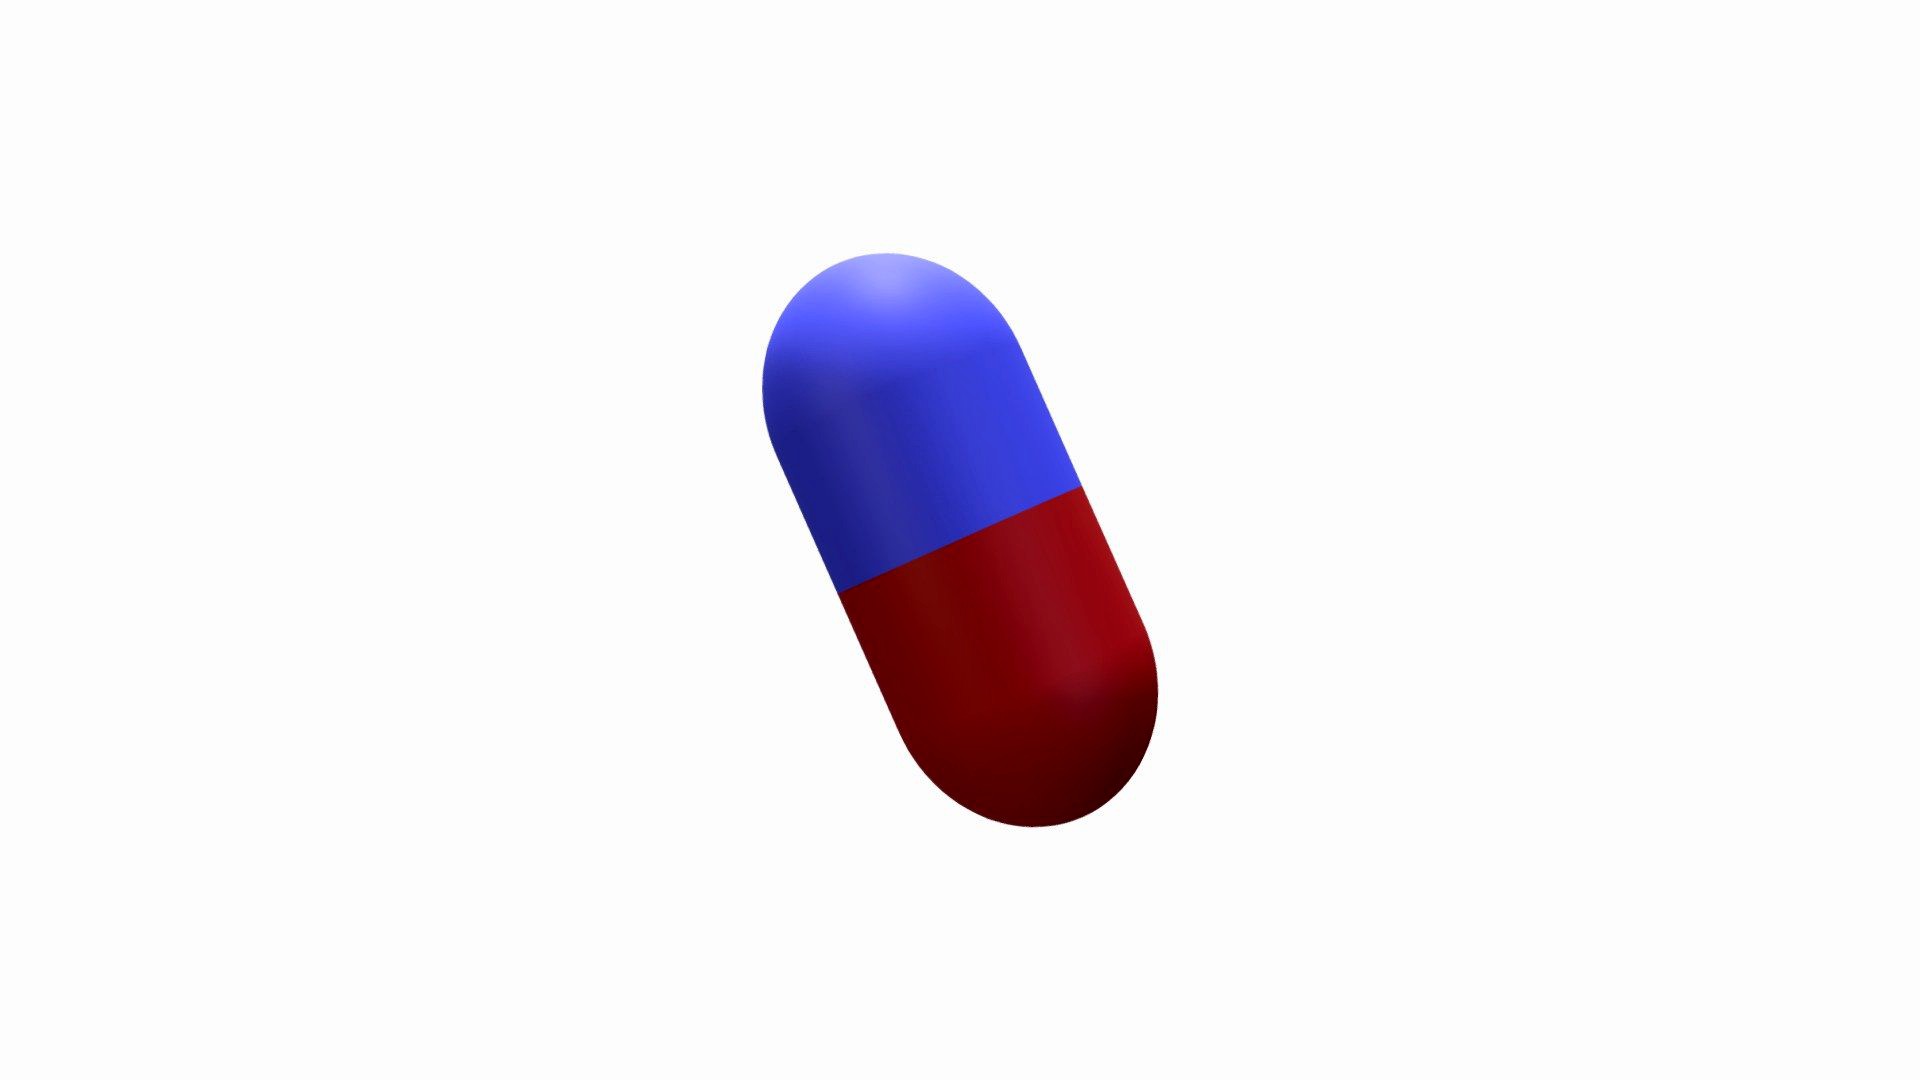 Drug Pill